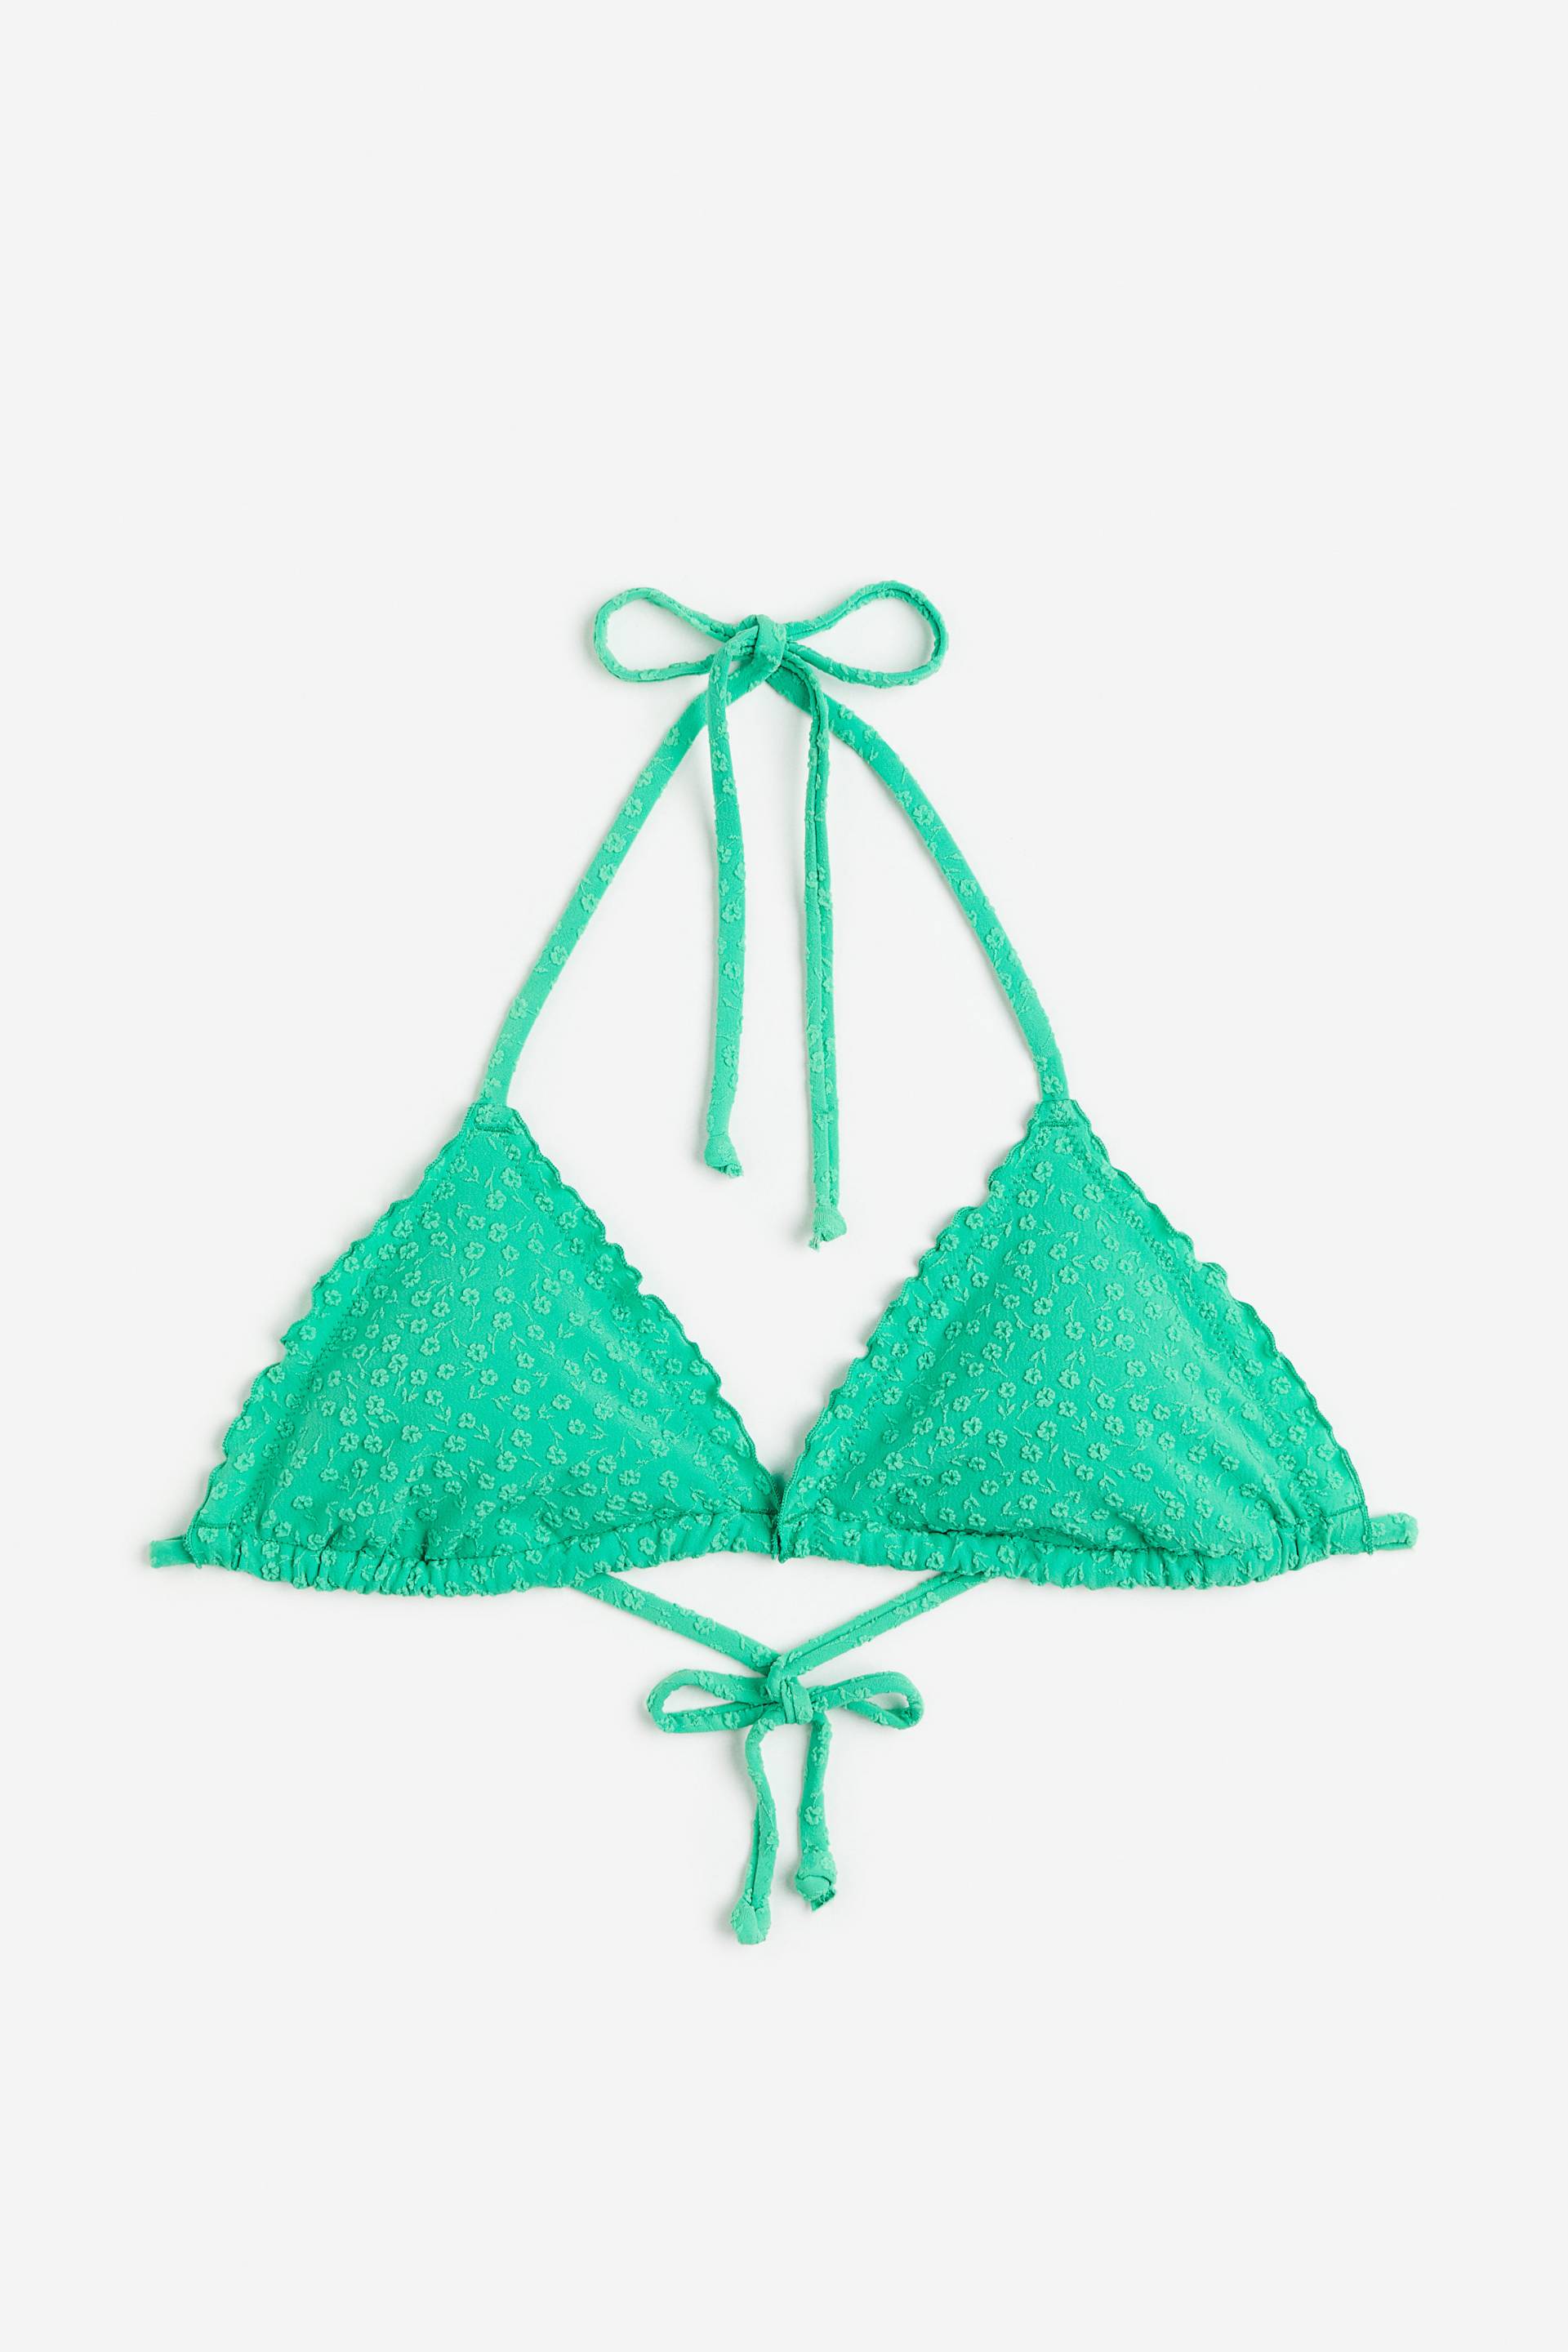 H&M Wattiertes Triangel-Bikinitop Knallgrün, Bikini-Oberteil in Größe 42. Farbe: Bright green von H&M